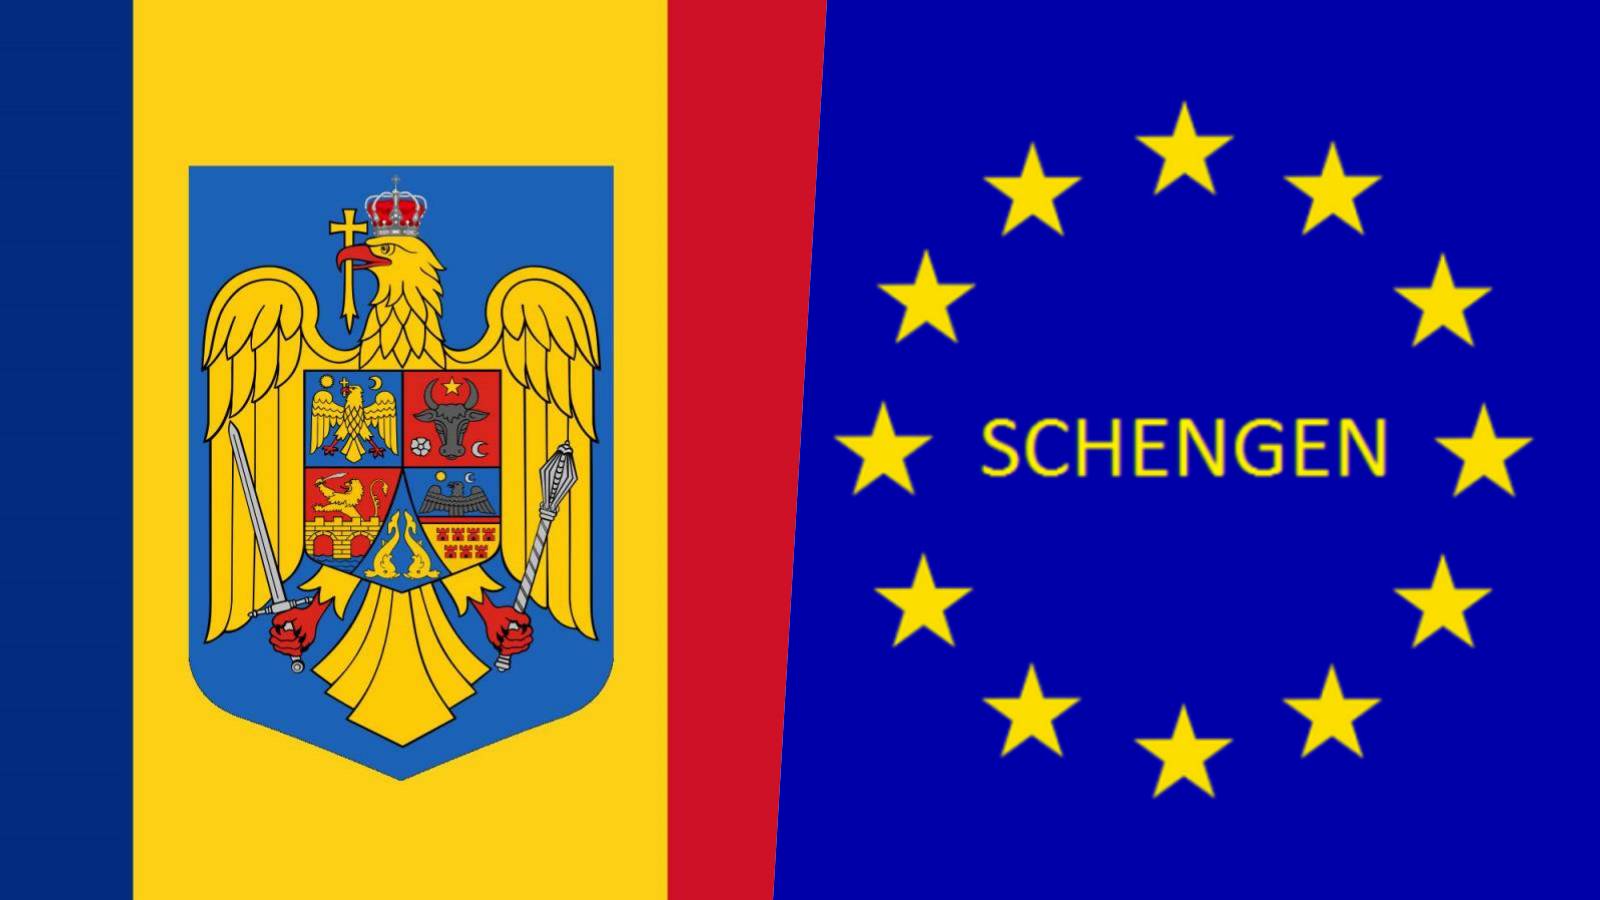 Romania Decizii Oficiale ULTIM MOMENT MAI Aderarea Schengen